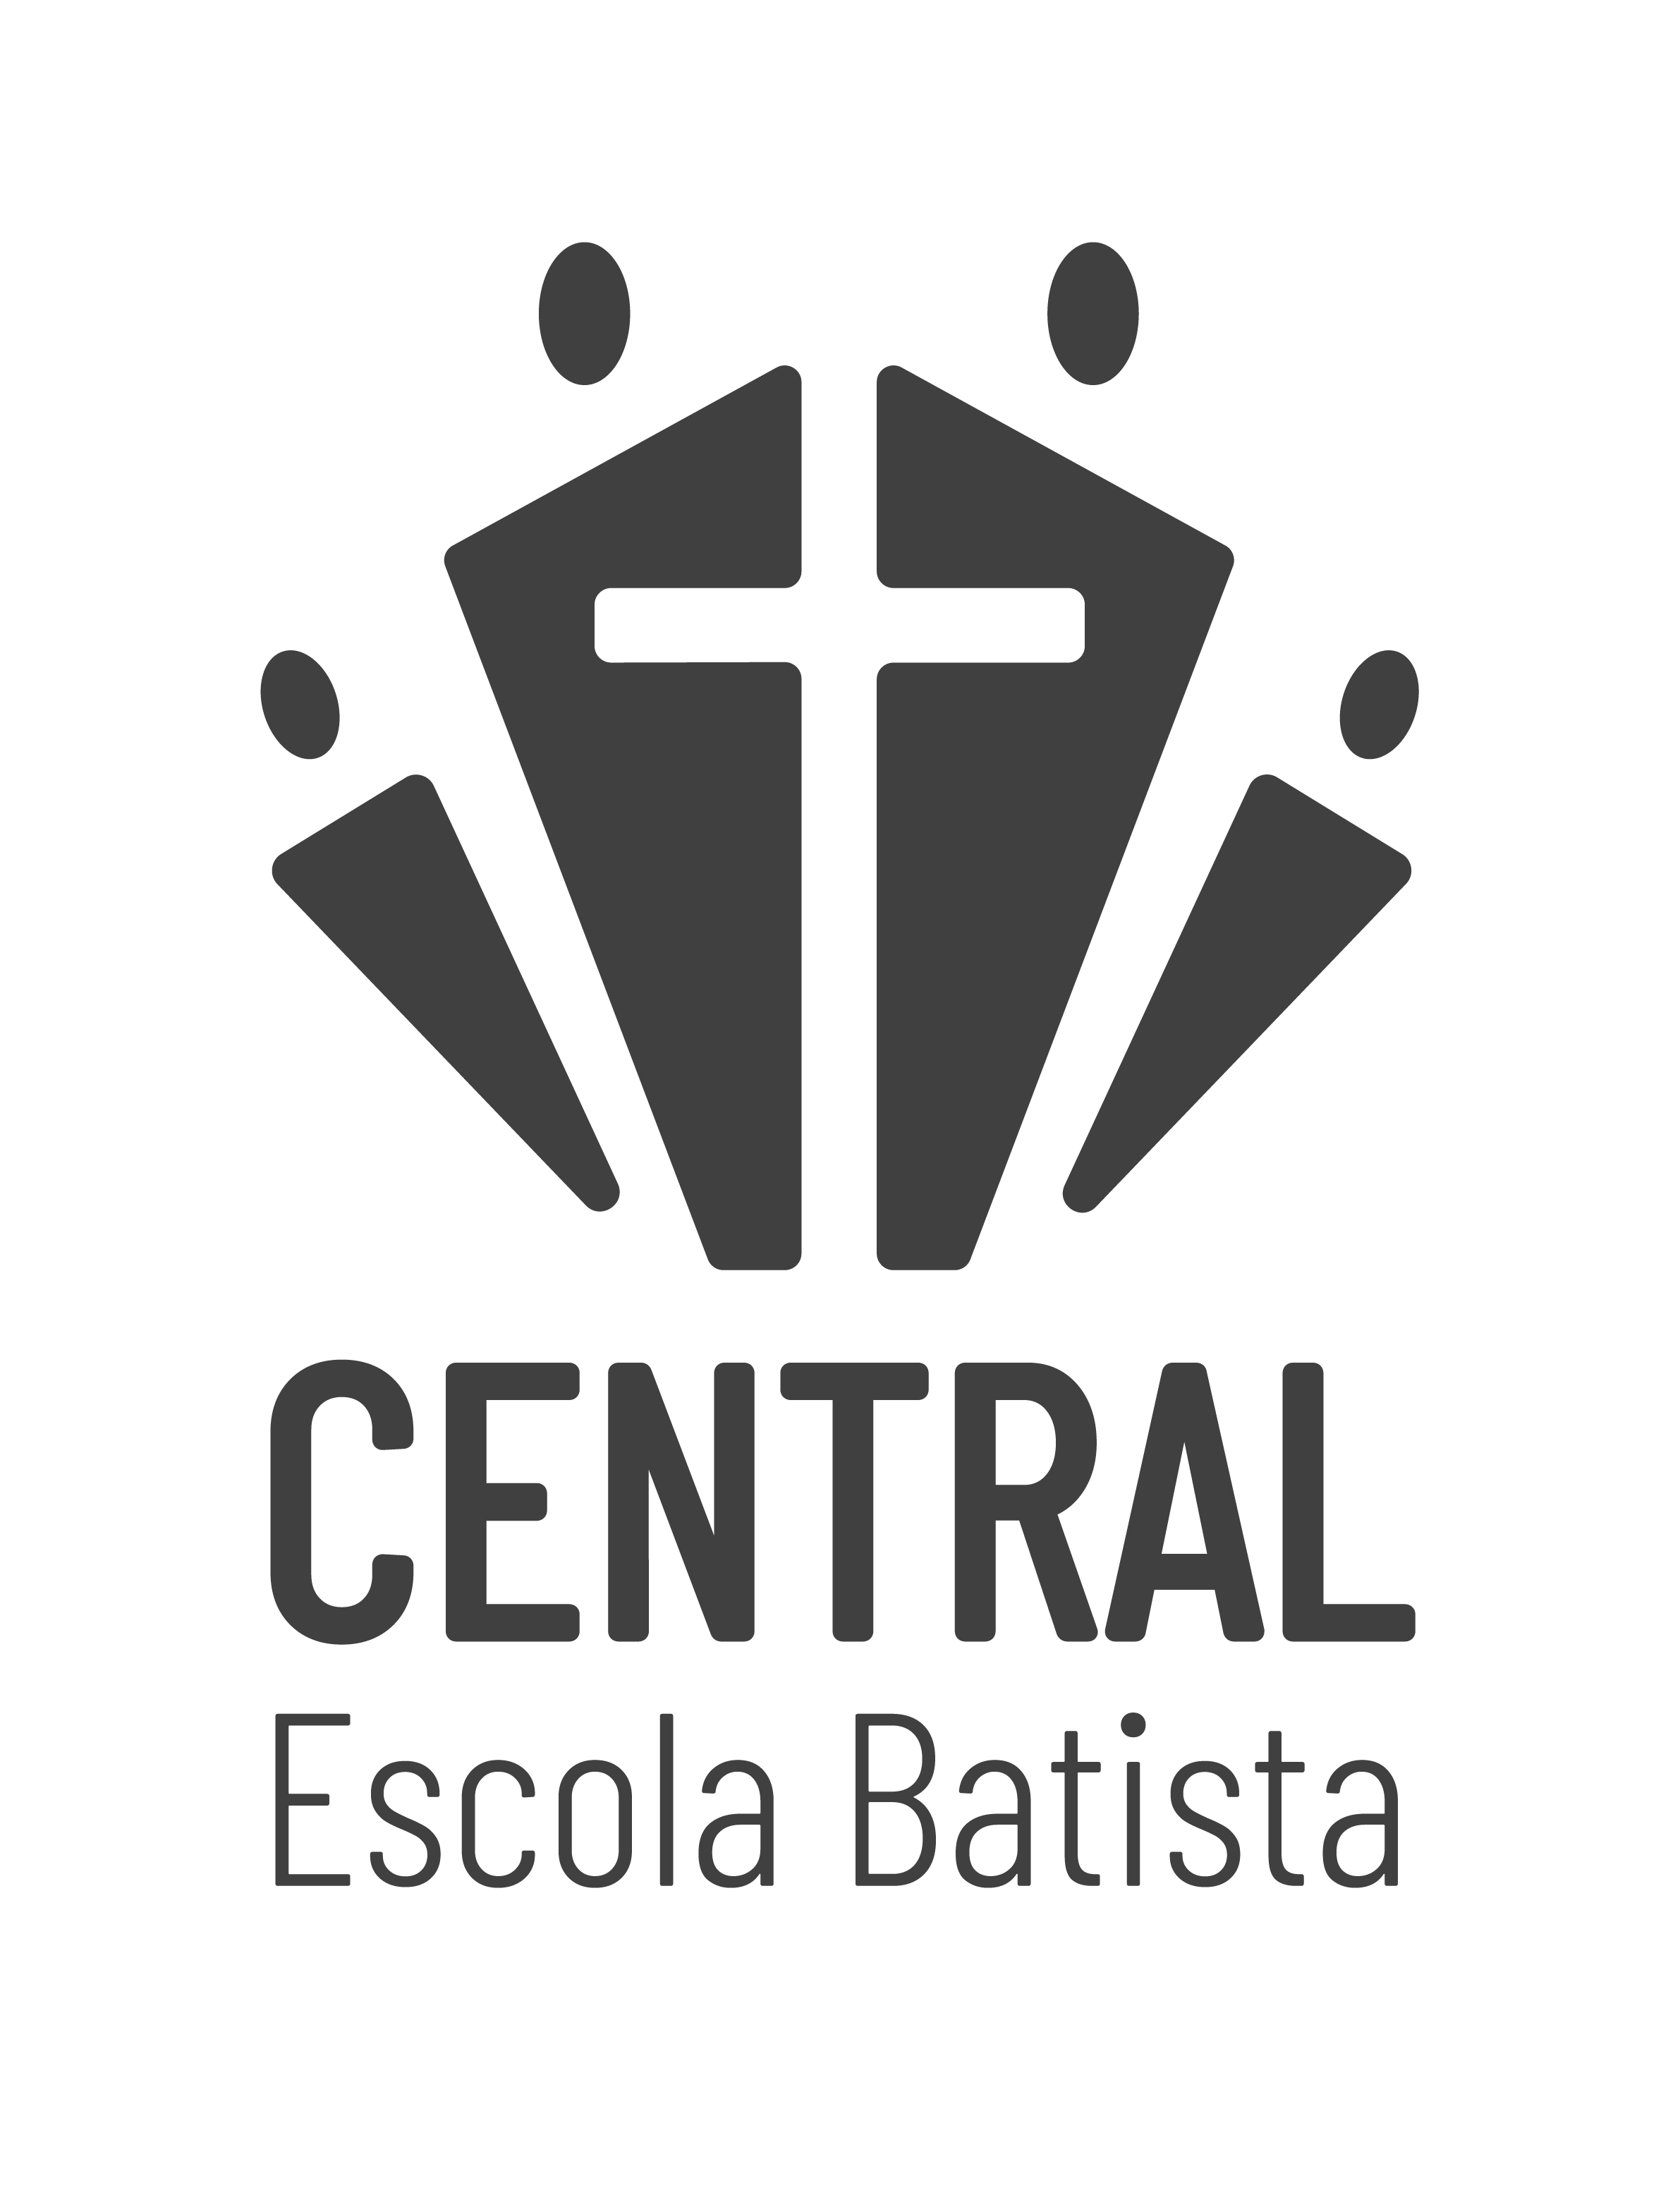 Escola Batista Central – Educação Infantil